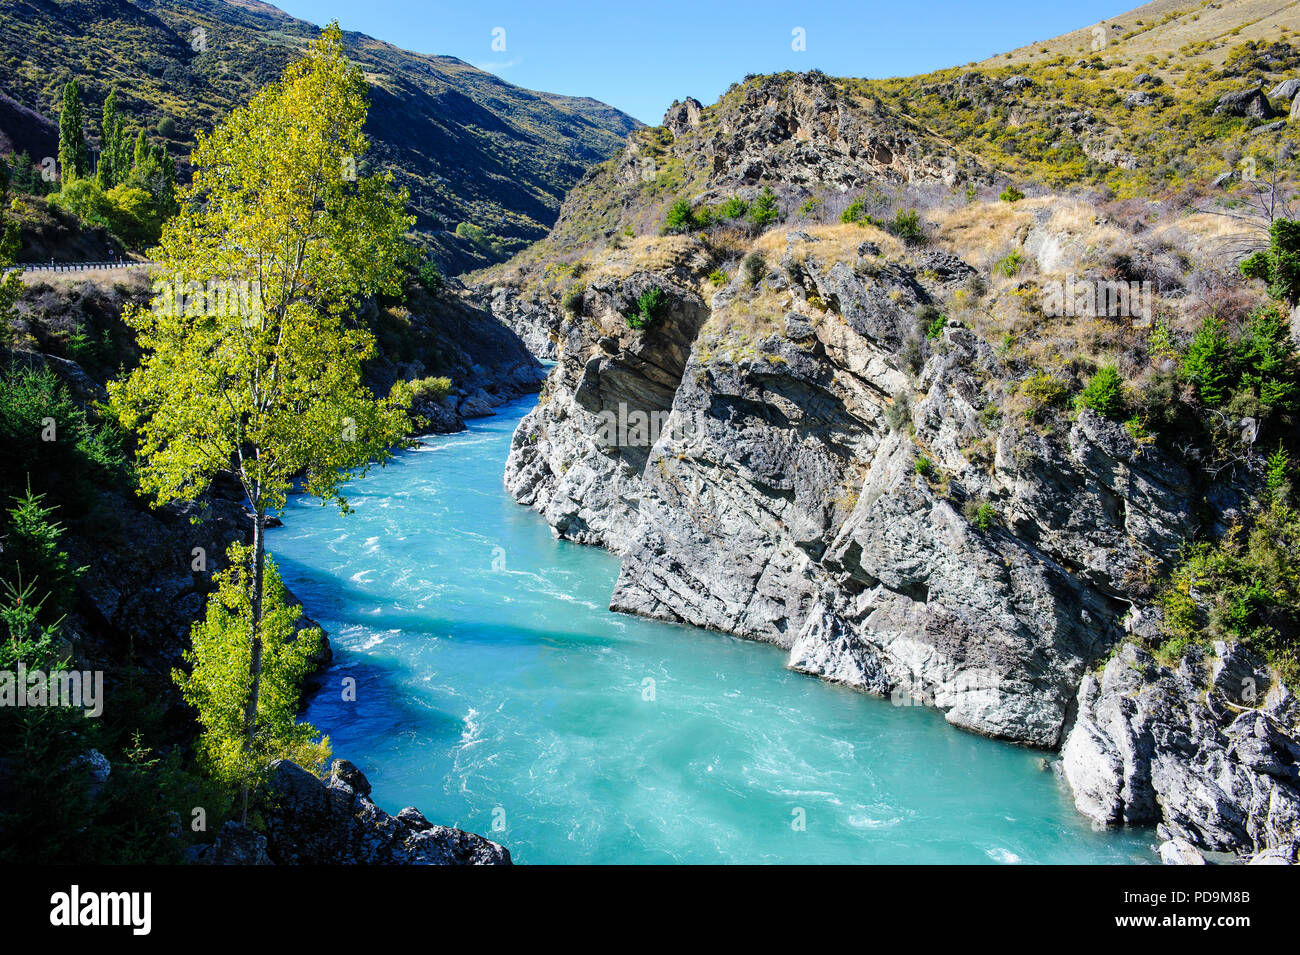 L'eau turquoise de la rivière Kawarau dans le Kawarau Gorge, île du Sud, Nouvelle-Zélande Banque D'Images